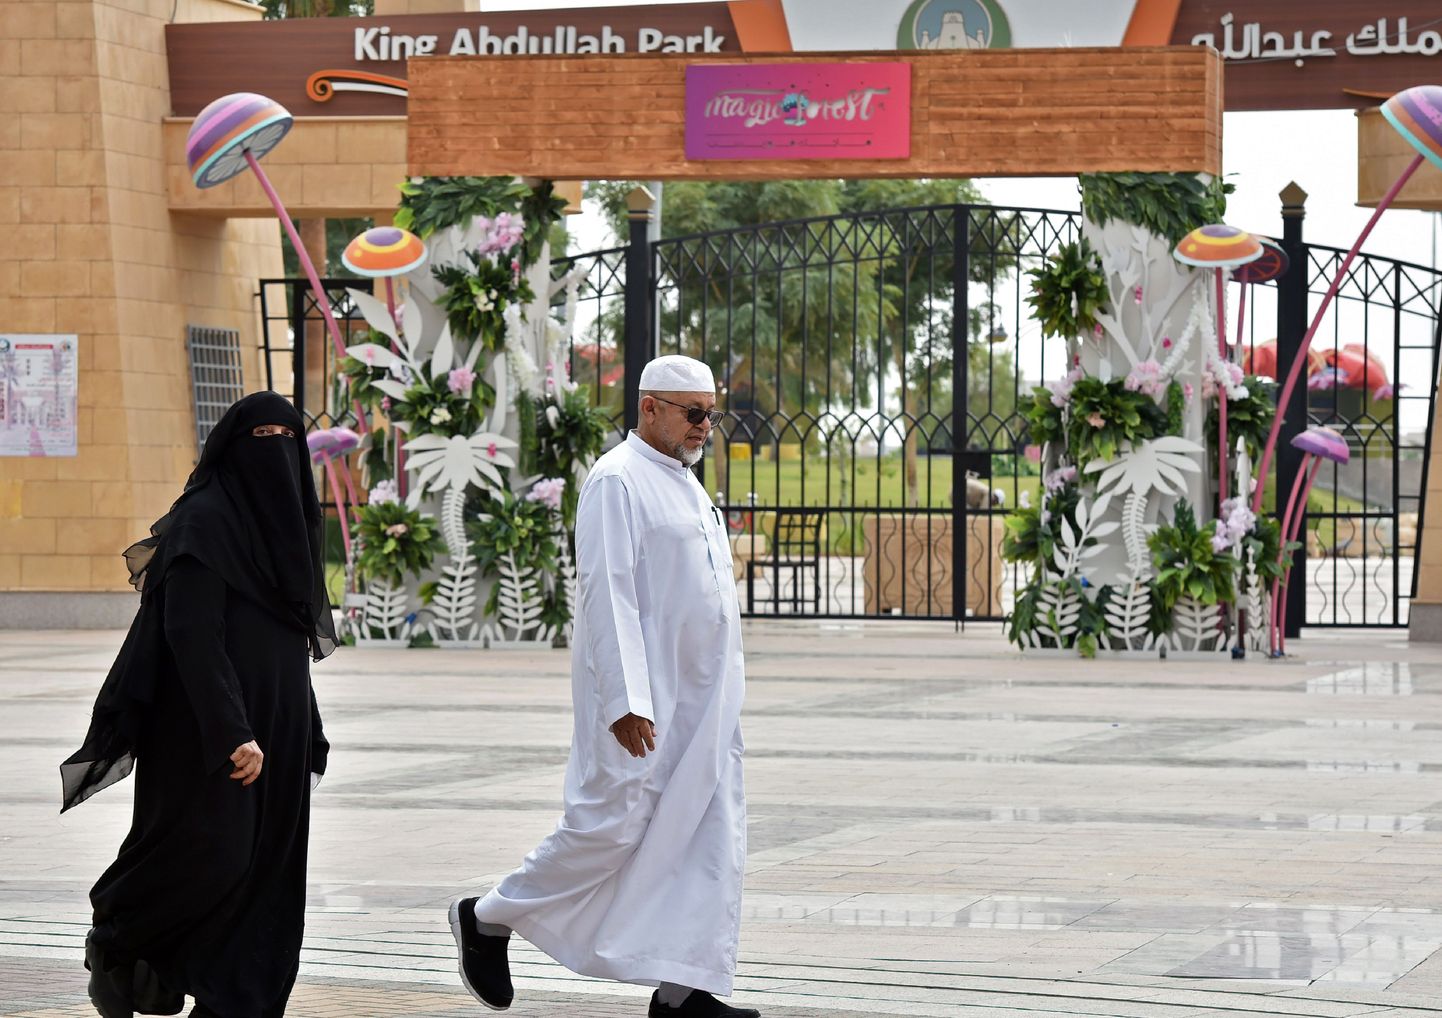 Värav kuningas Abdullah parki, kus jeemenlane pussitas nelja hispaania näitlejat.